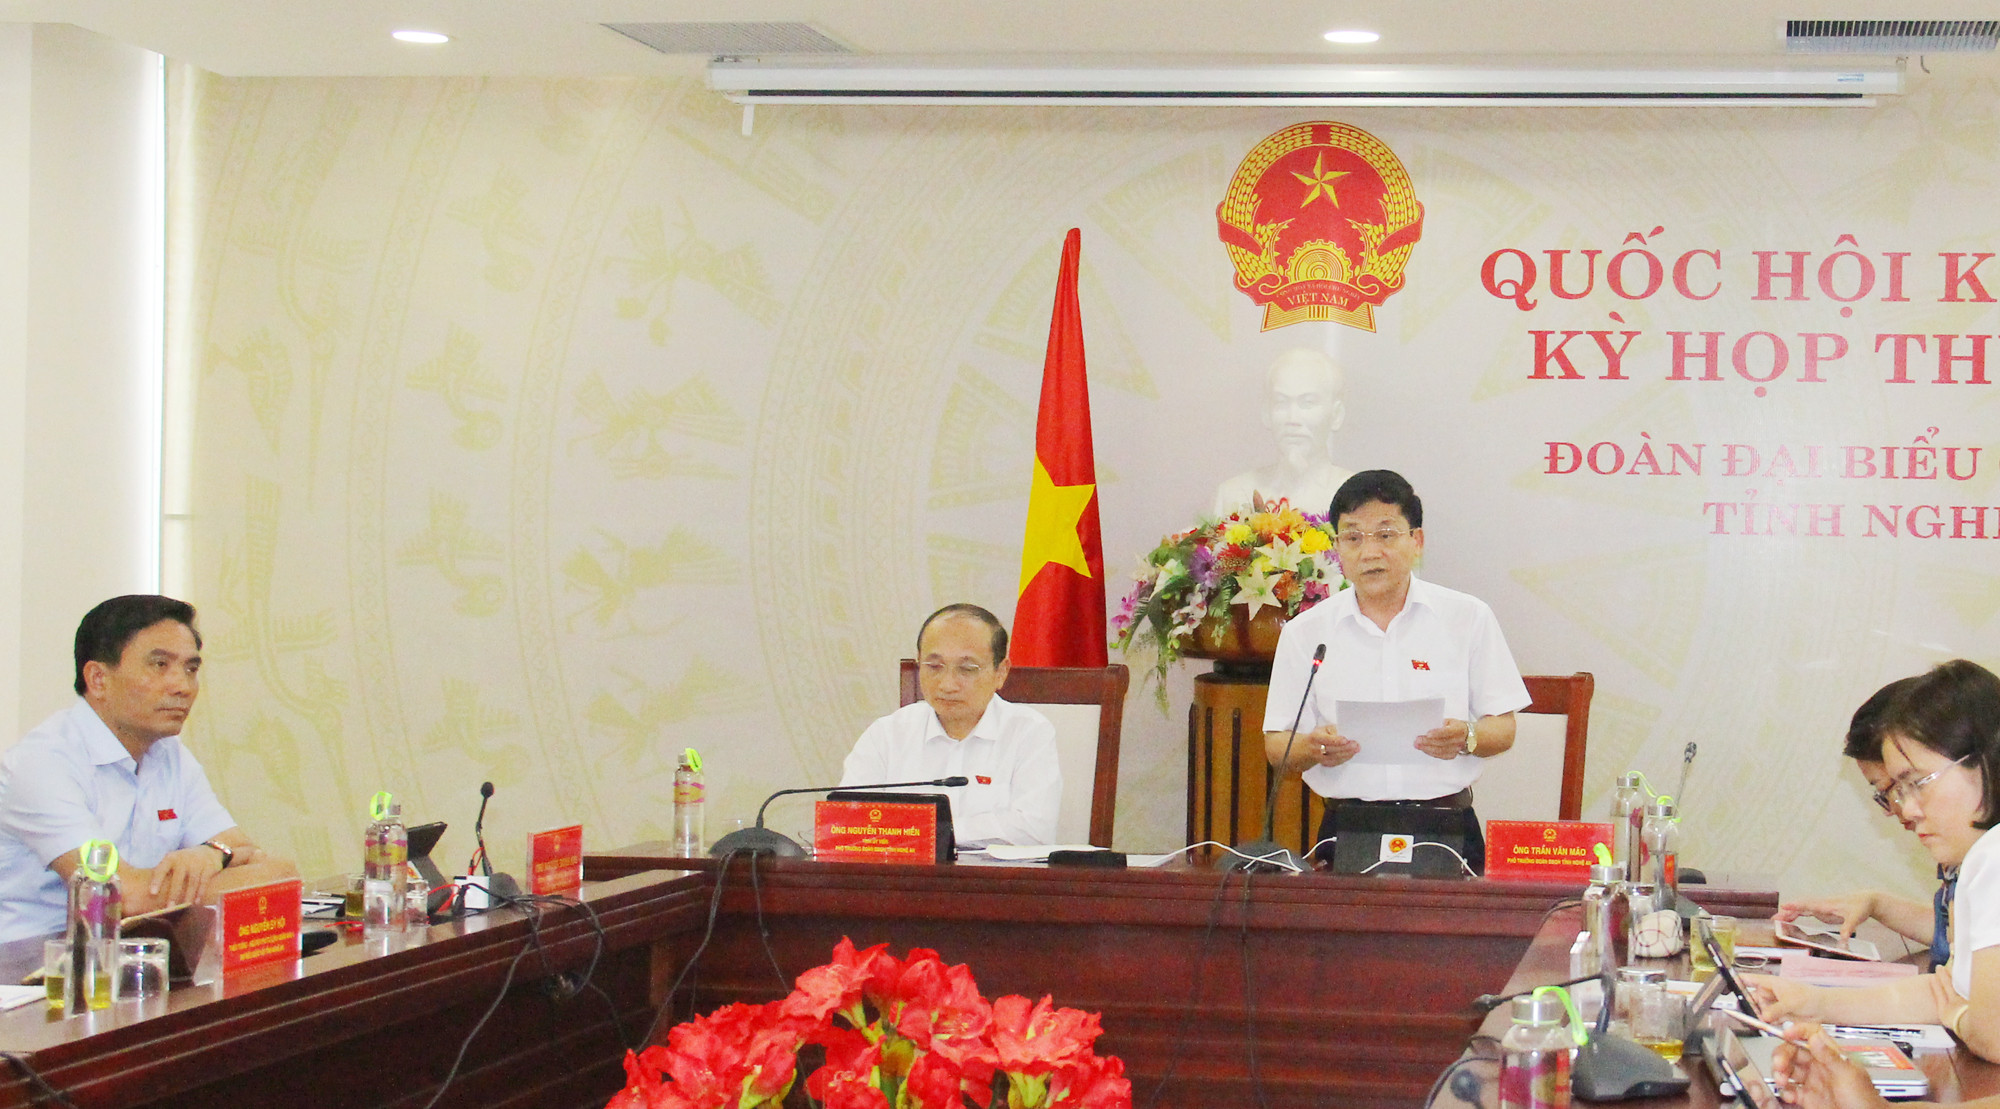 Đồng chí Trần Văn Mão - Phó Trưởng Đoàn đại biểu Quốc hội tỉnh trình bày kiến nghị góp ý tại điểm cầu Nghệ An. Ảnh: Thanh Quỳnh